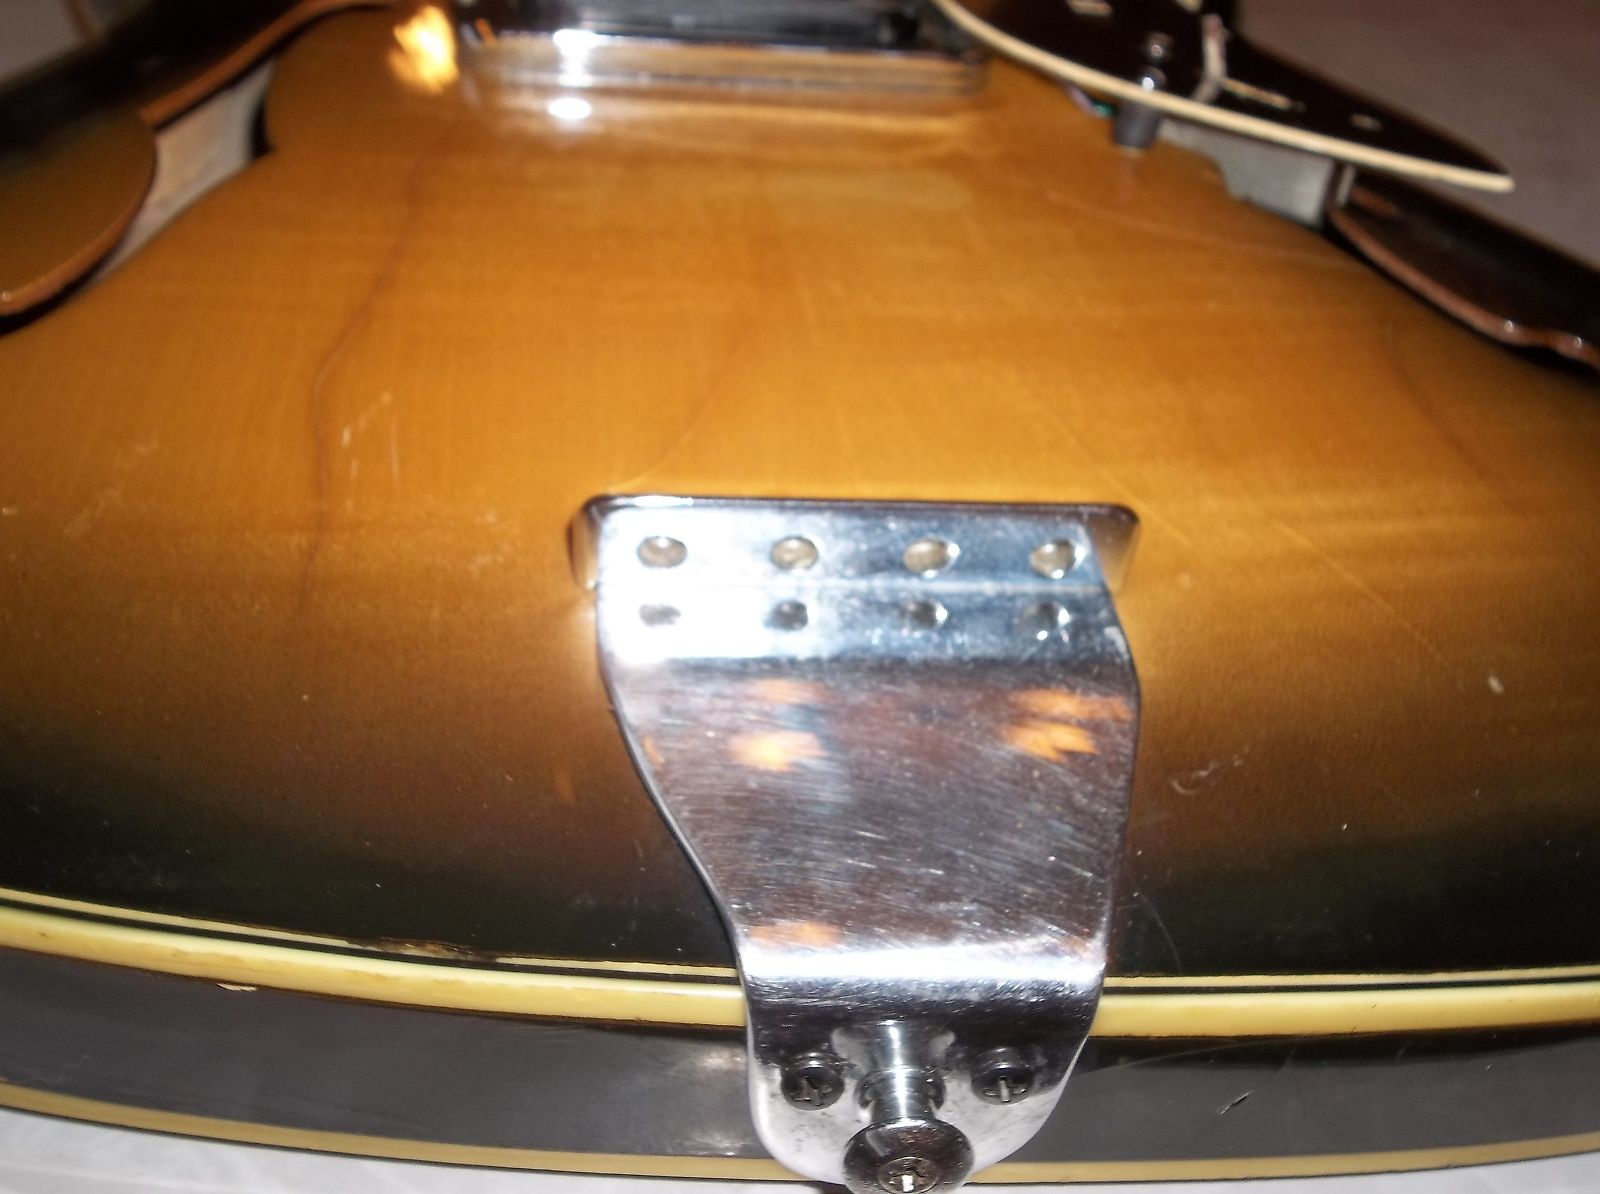 1966 Baldwin Vibraslim Bass